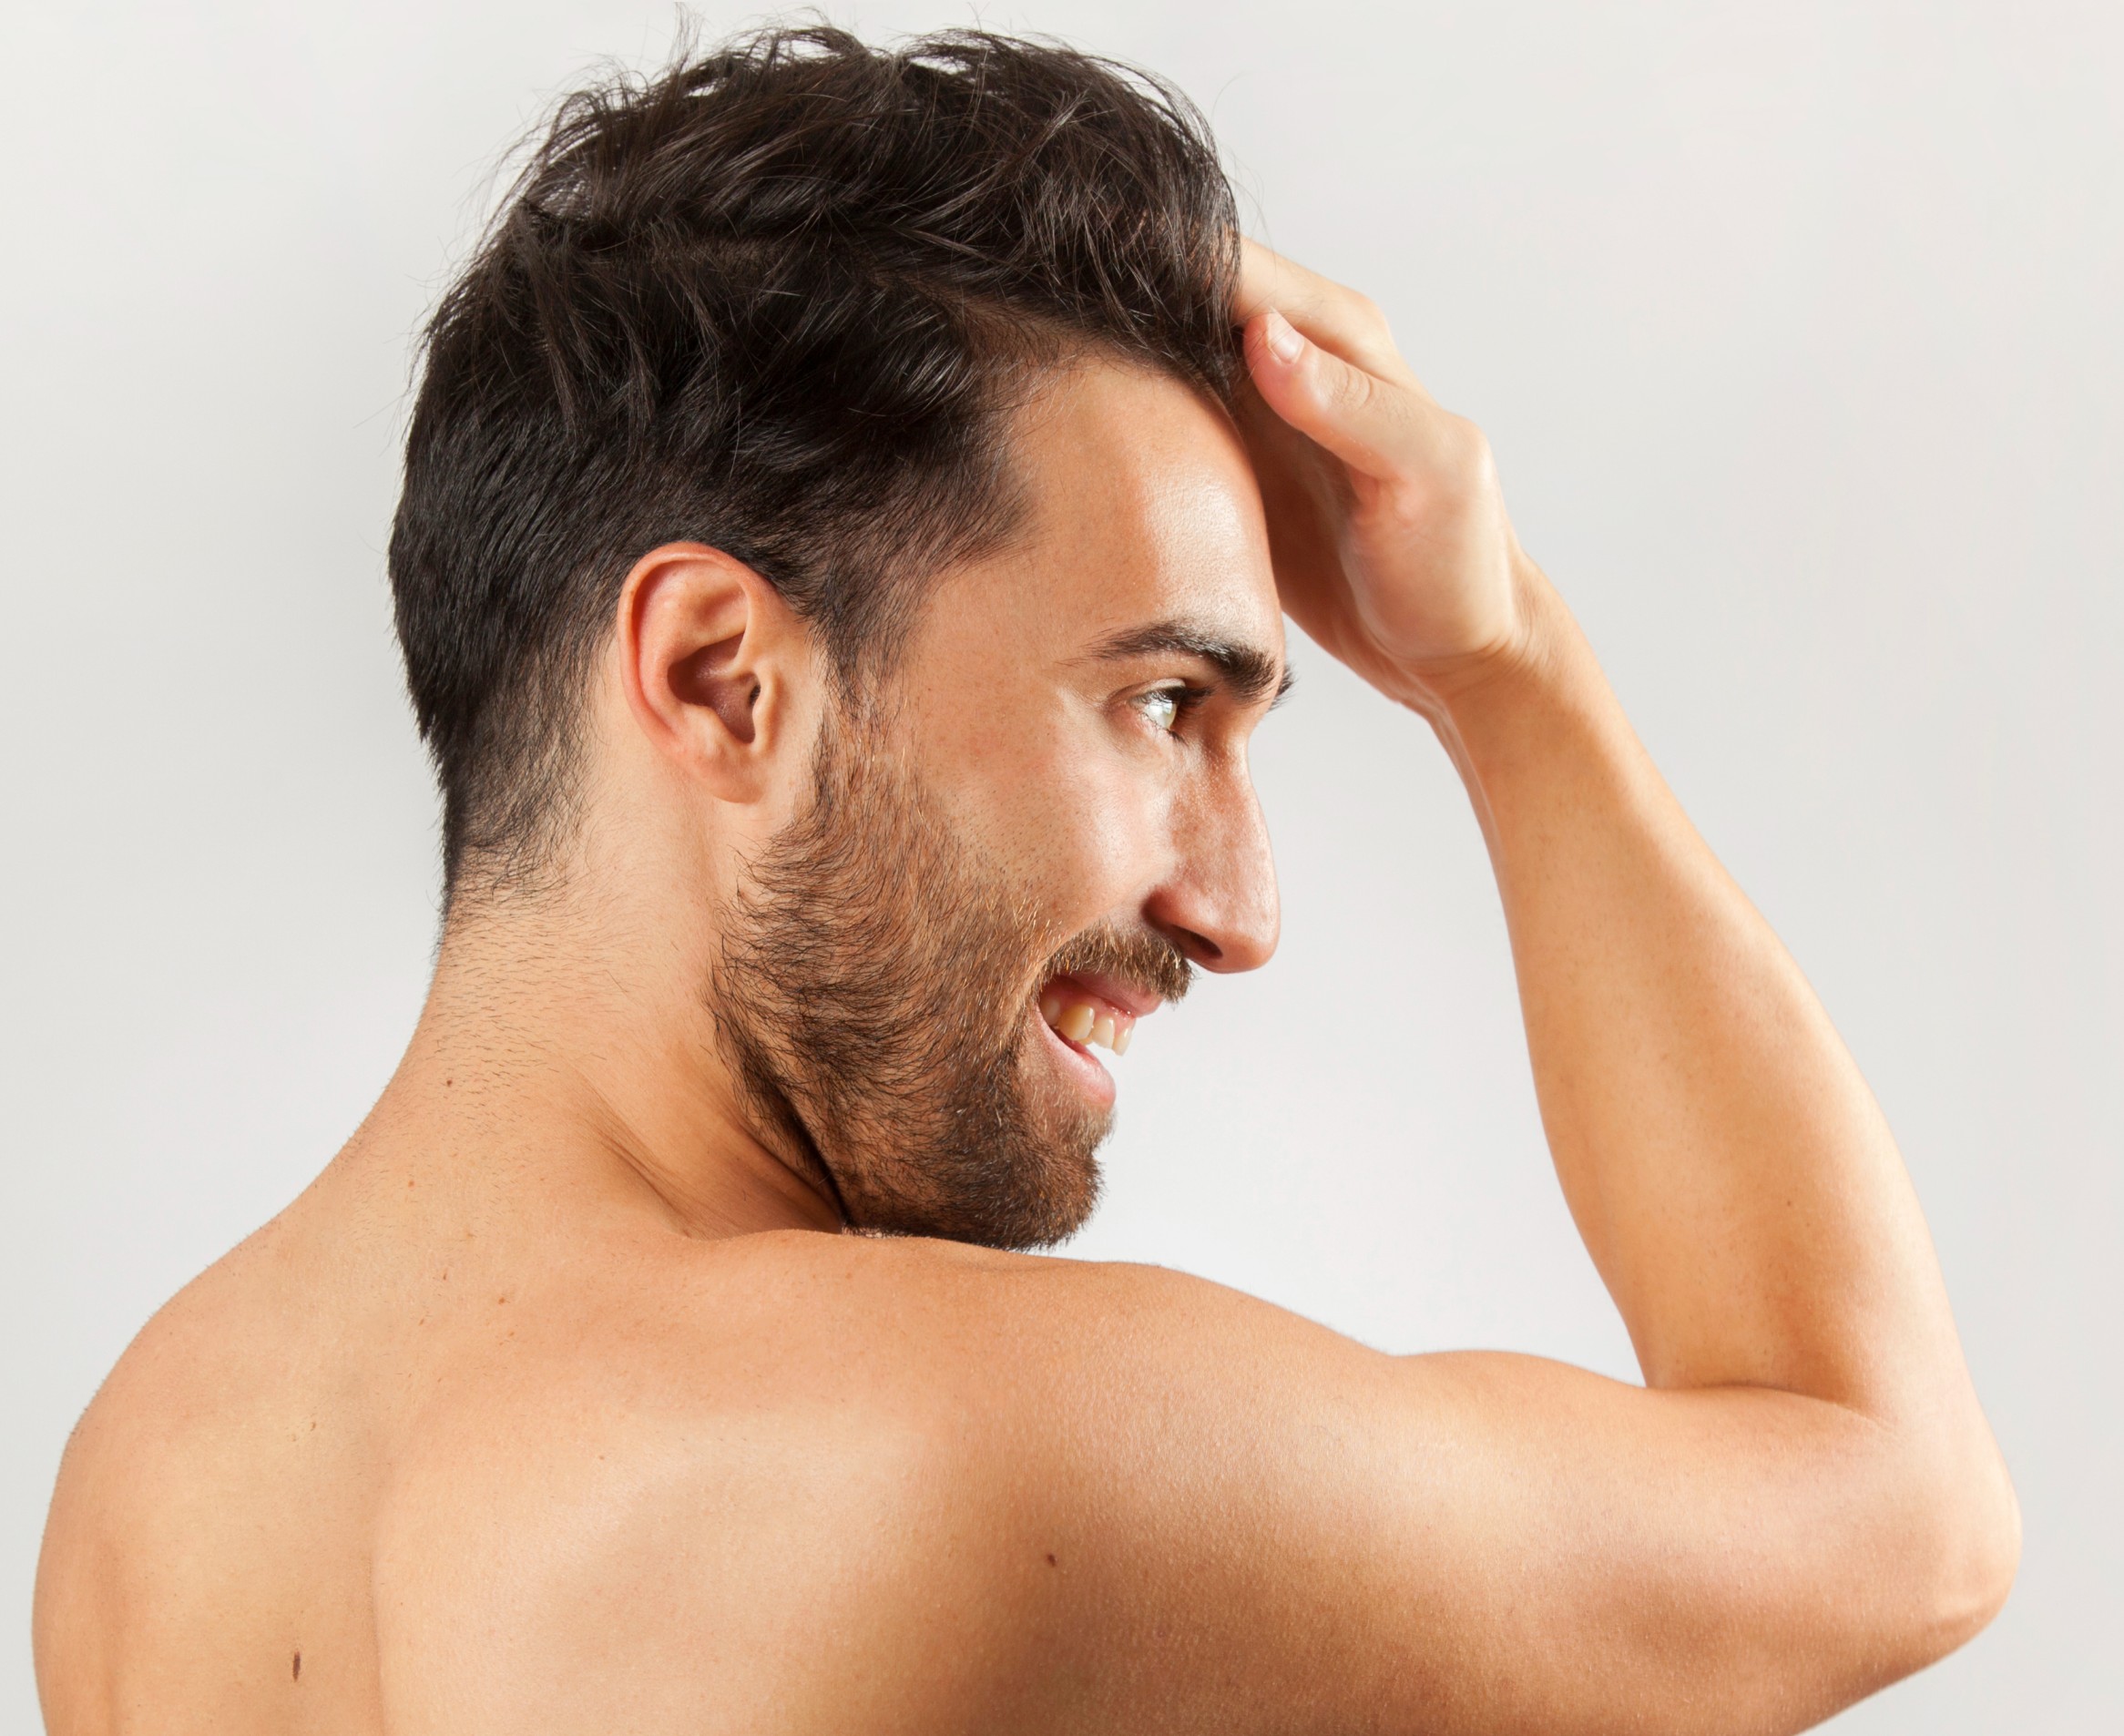 Protez Saç Bantları Nasıl Kullanılır?